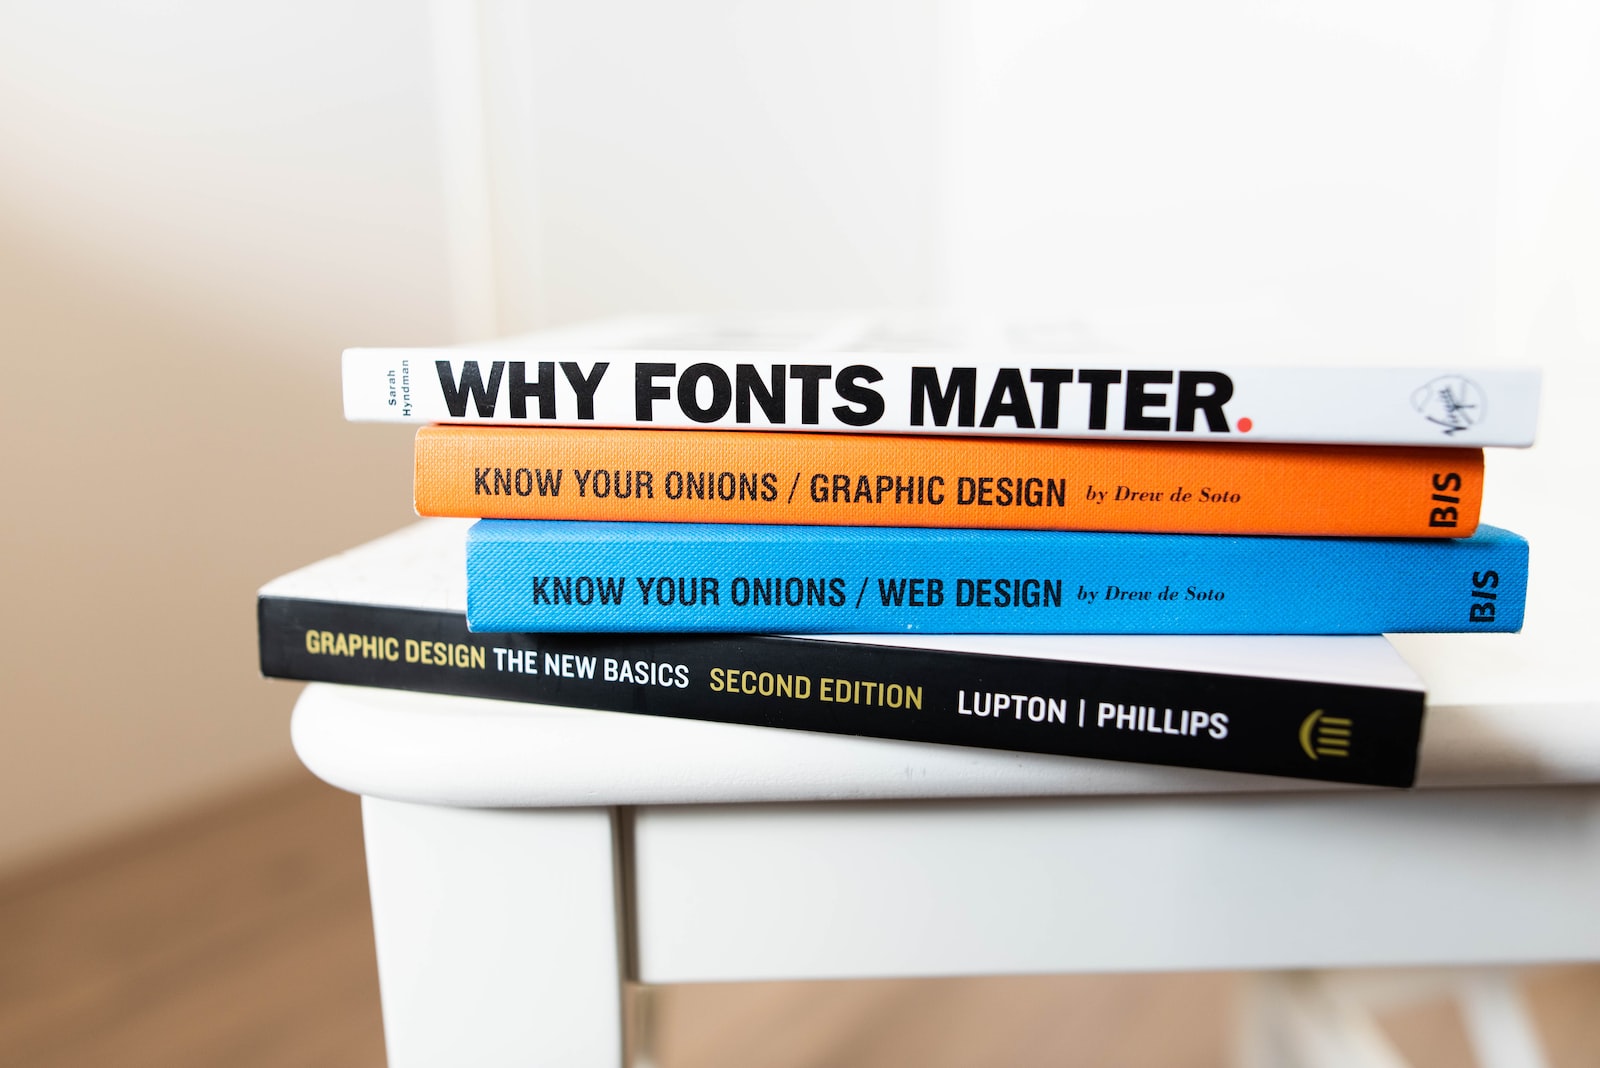 Graphic Design book